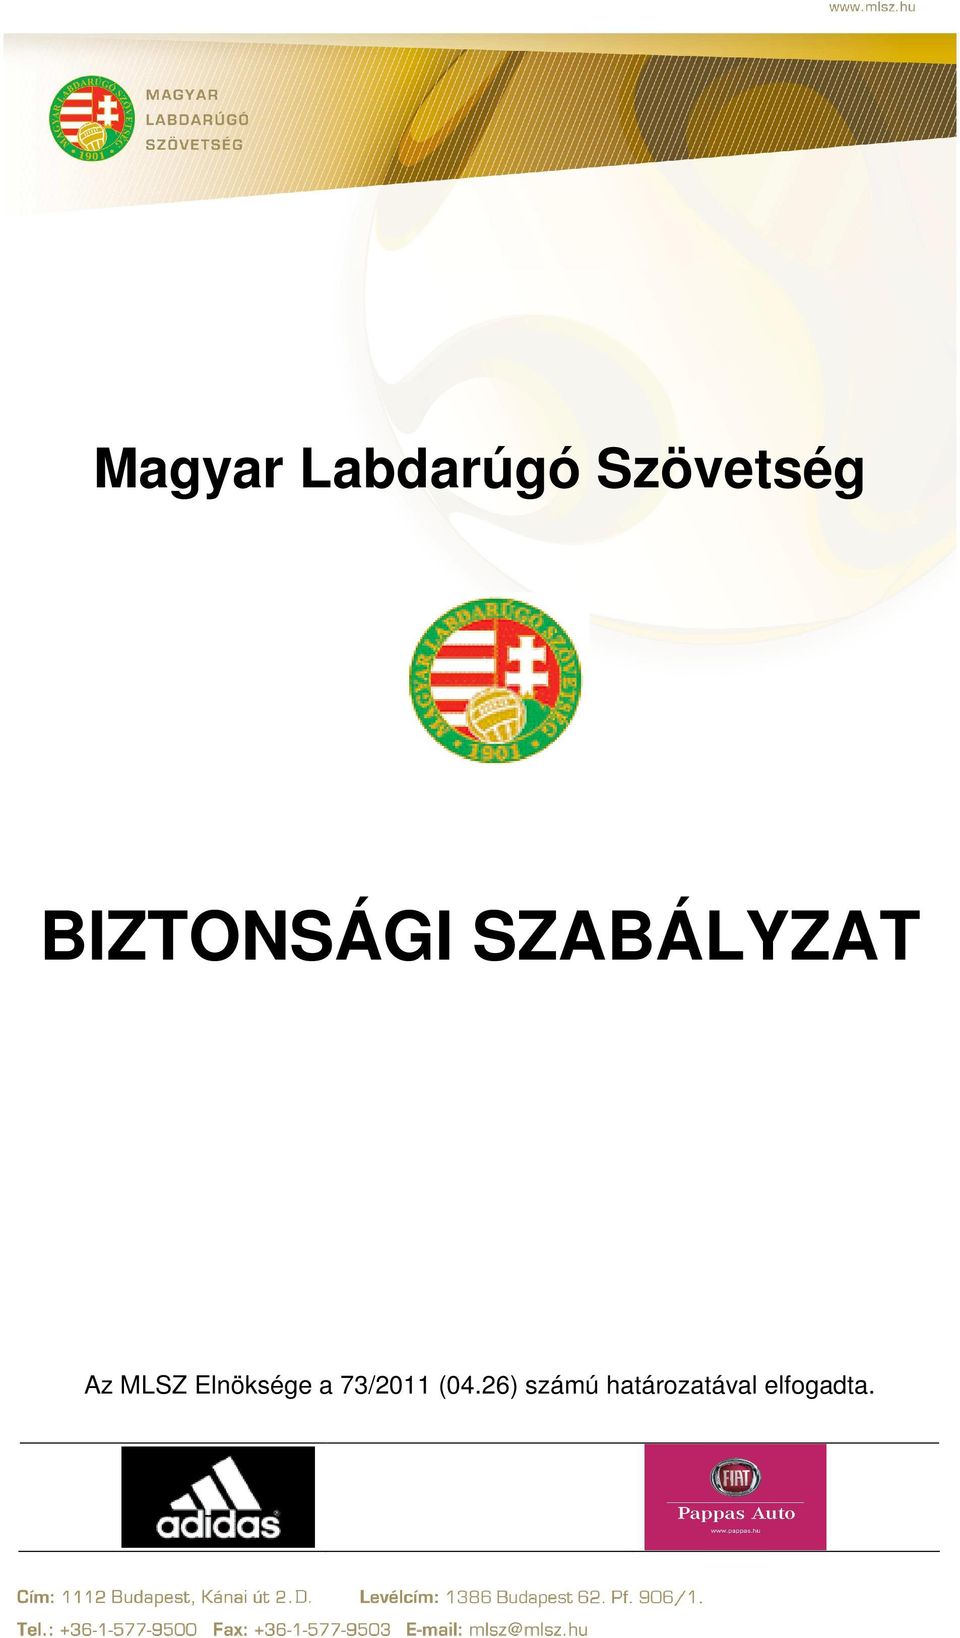 MLSZ Elnöksége a 73/2011 (04.